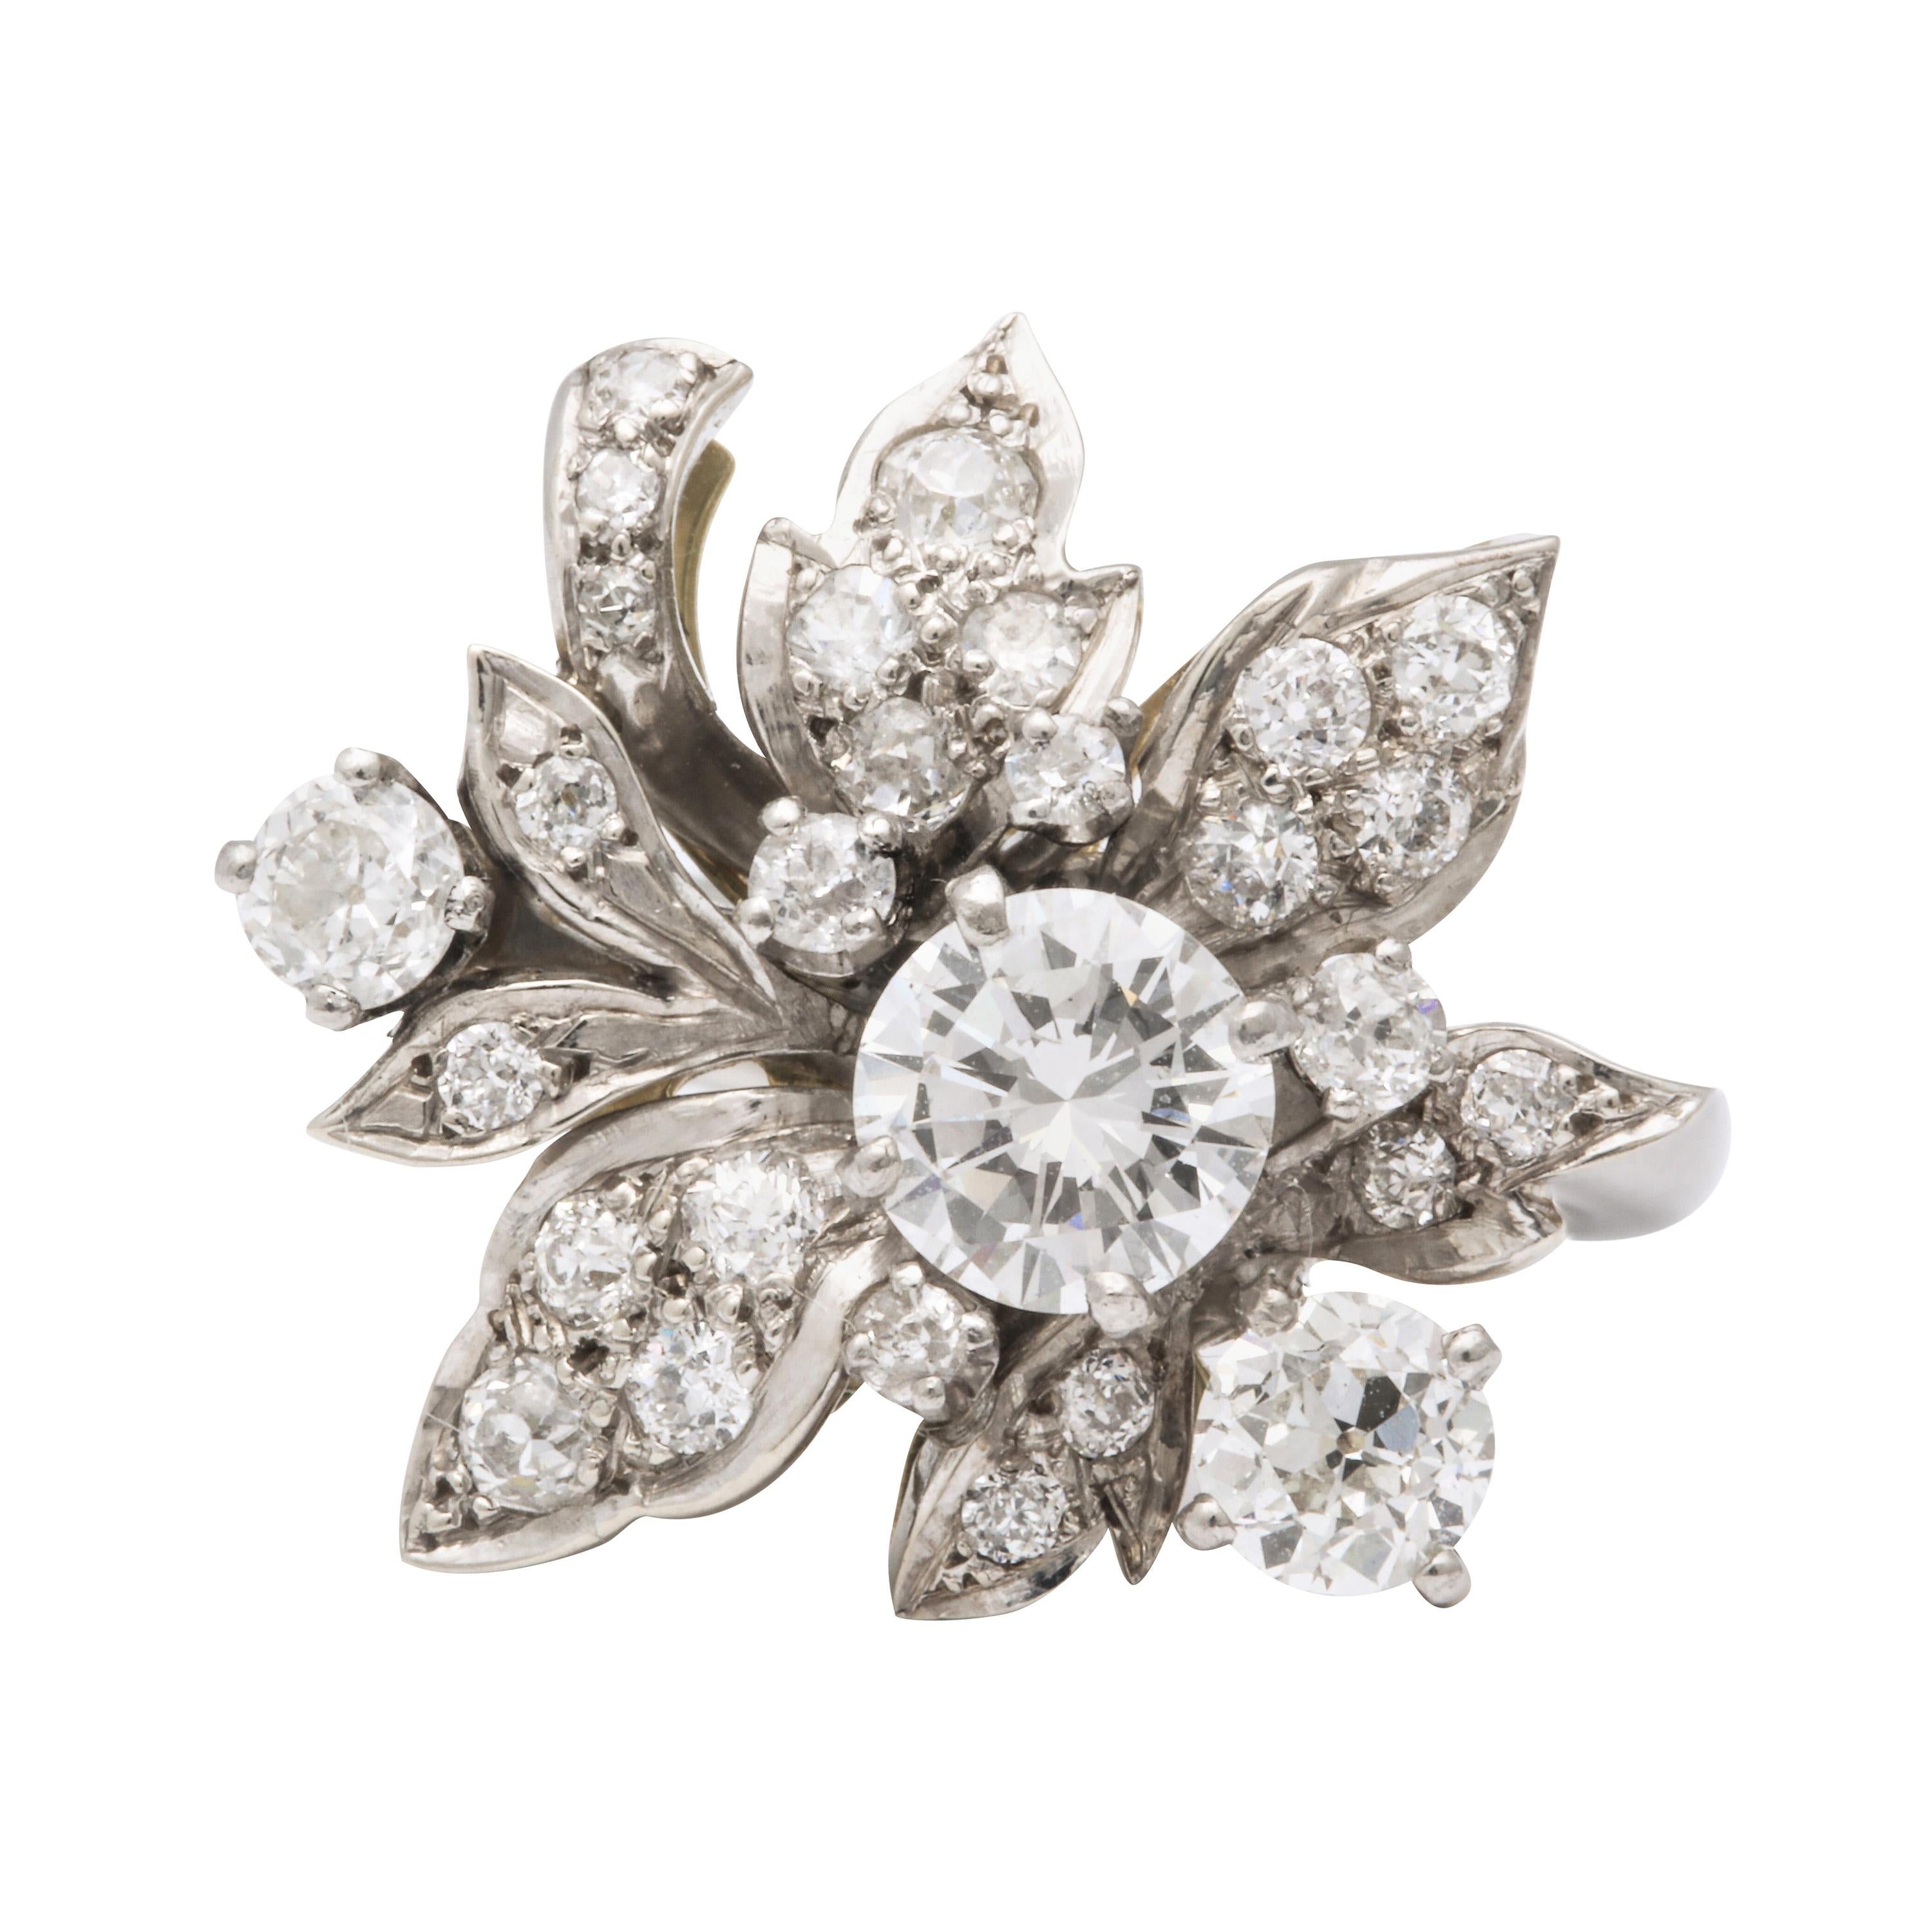 Une belle  groupement floral articulé de diamants avec une pierre centrale d'environ 0,95 ct, ainsi qu'une variété d'autres diamants  tailles formant des pétales  et des feuilles.
C'est une bague incroyablement belle qui peut être portée tout le